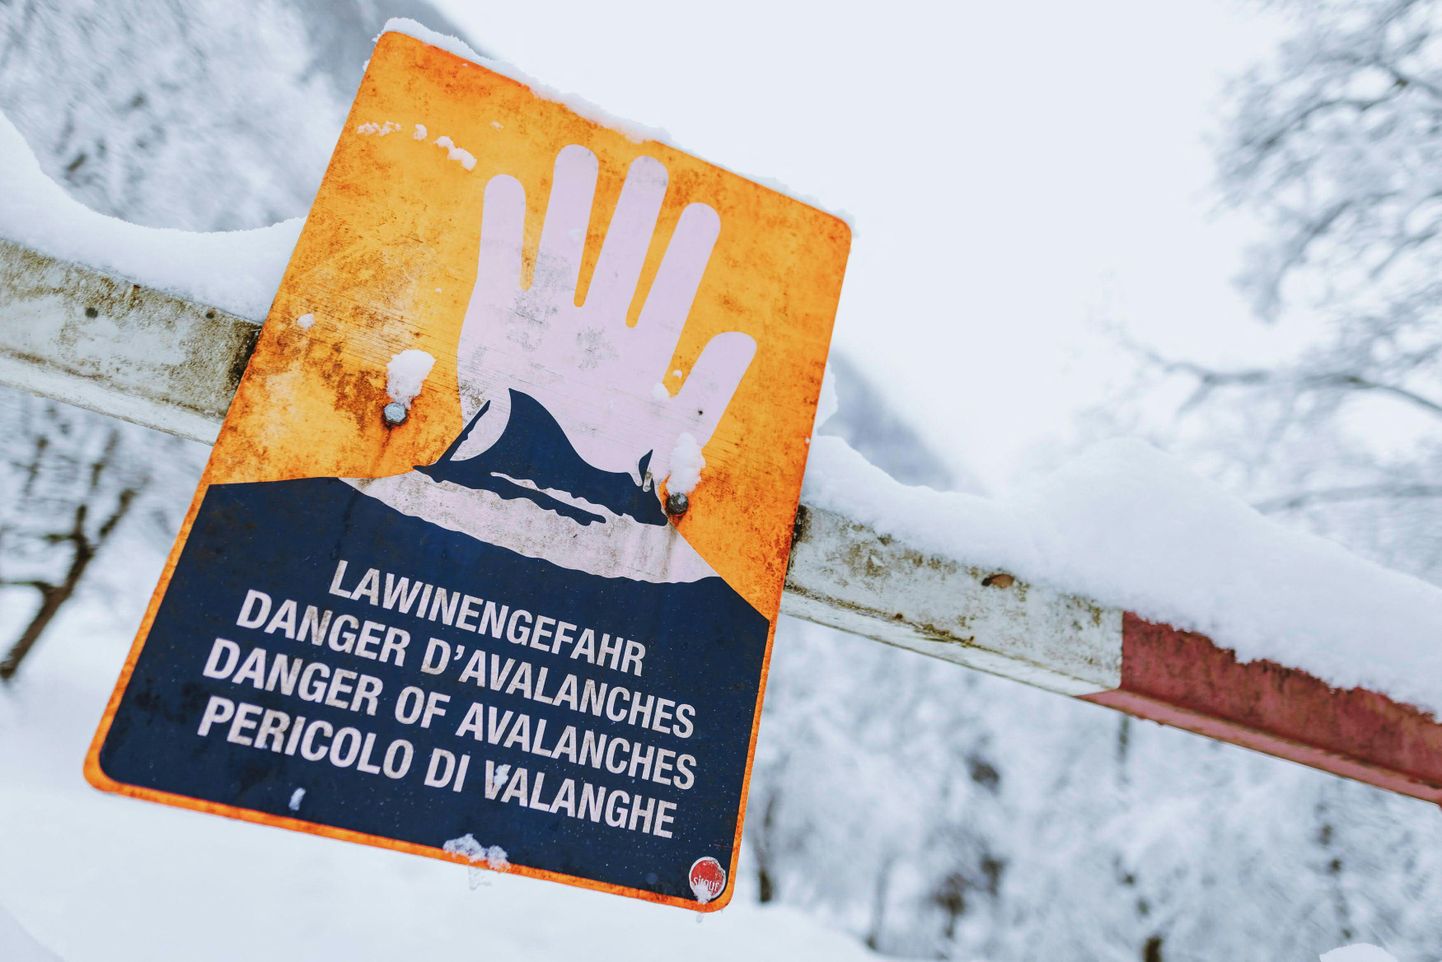 Brīdinājums par lavīnām Austrijā.